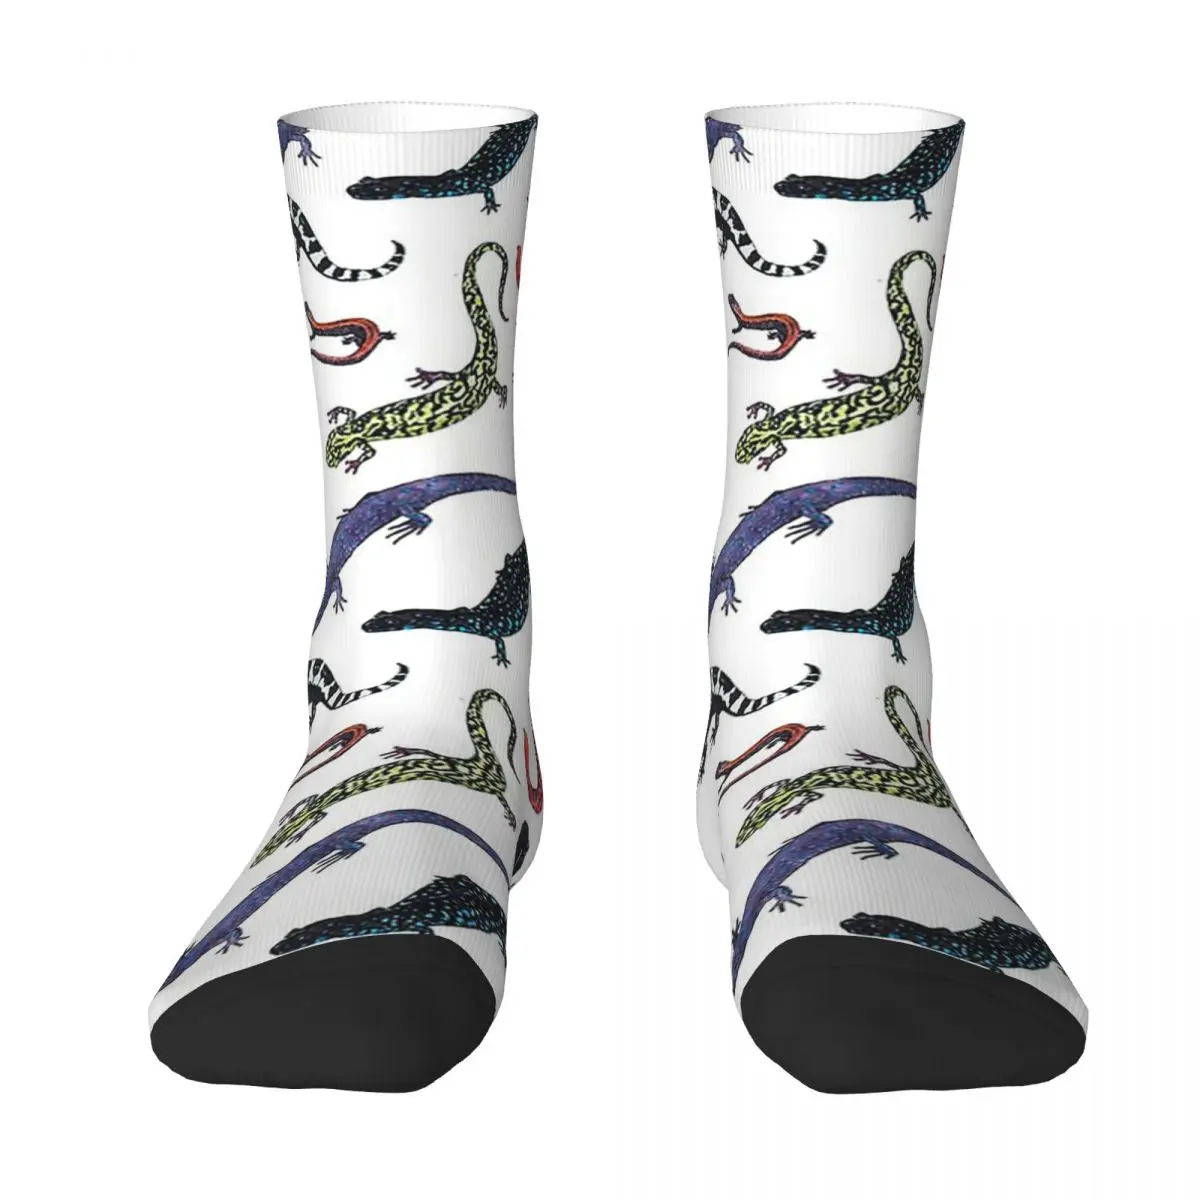 

All Seasons Crew Stockings Salamanders Socks Harajuku Crazy Hip Hop Long Socks Accessories for Men Women Gifts